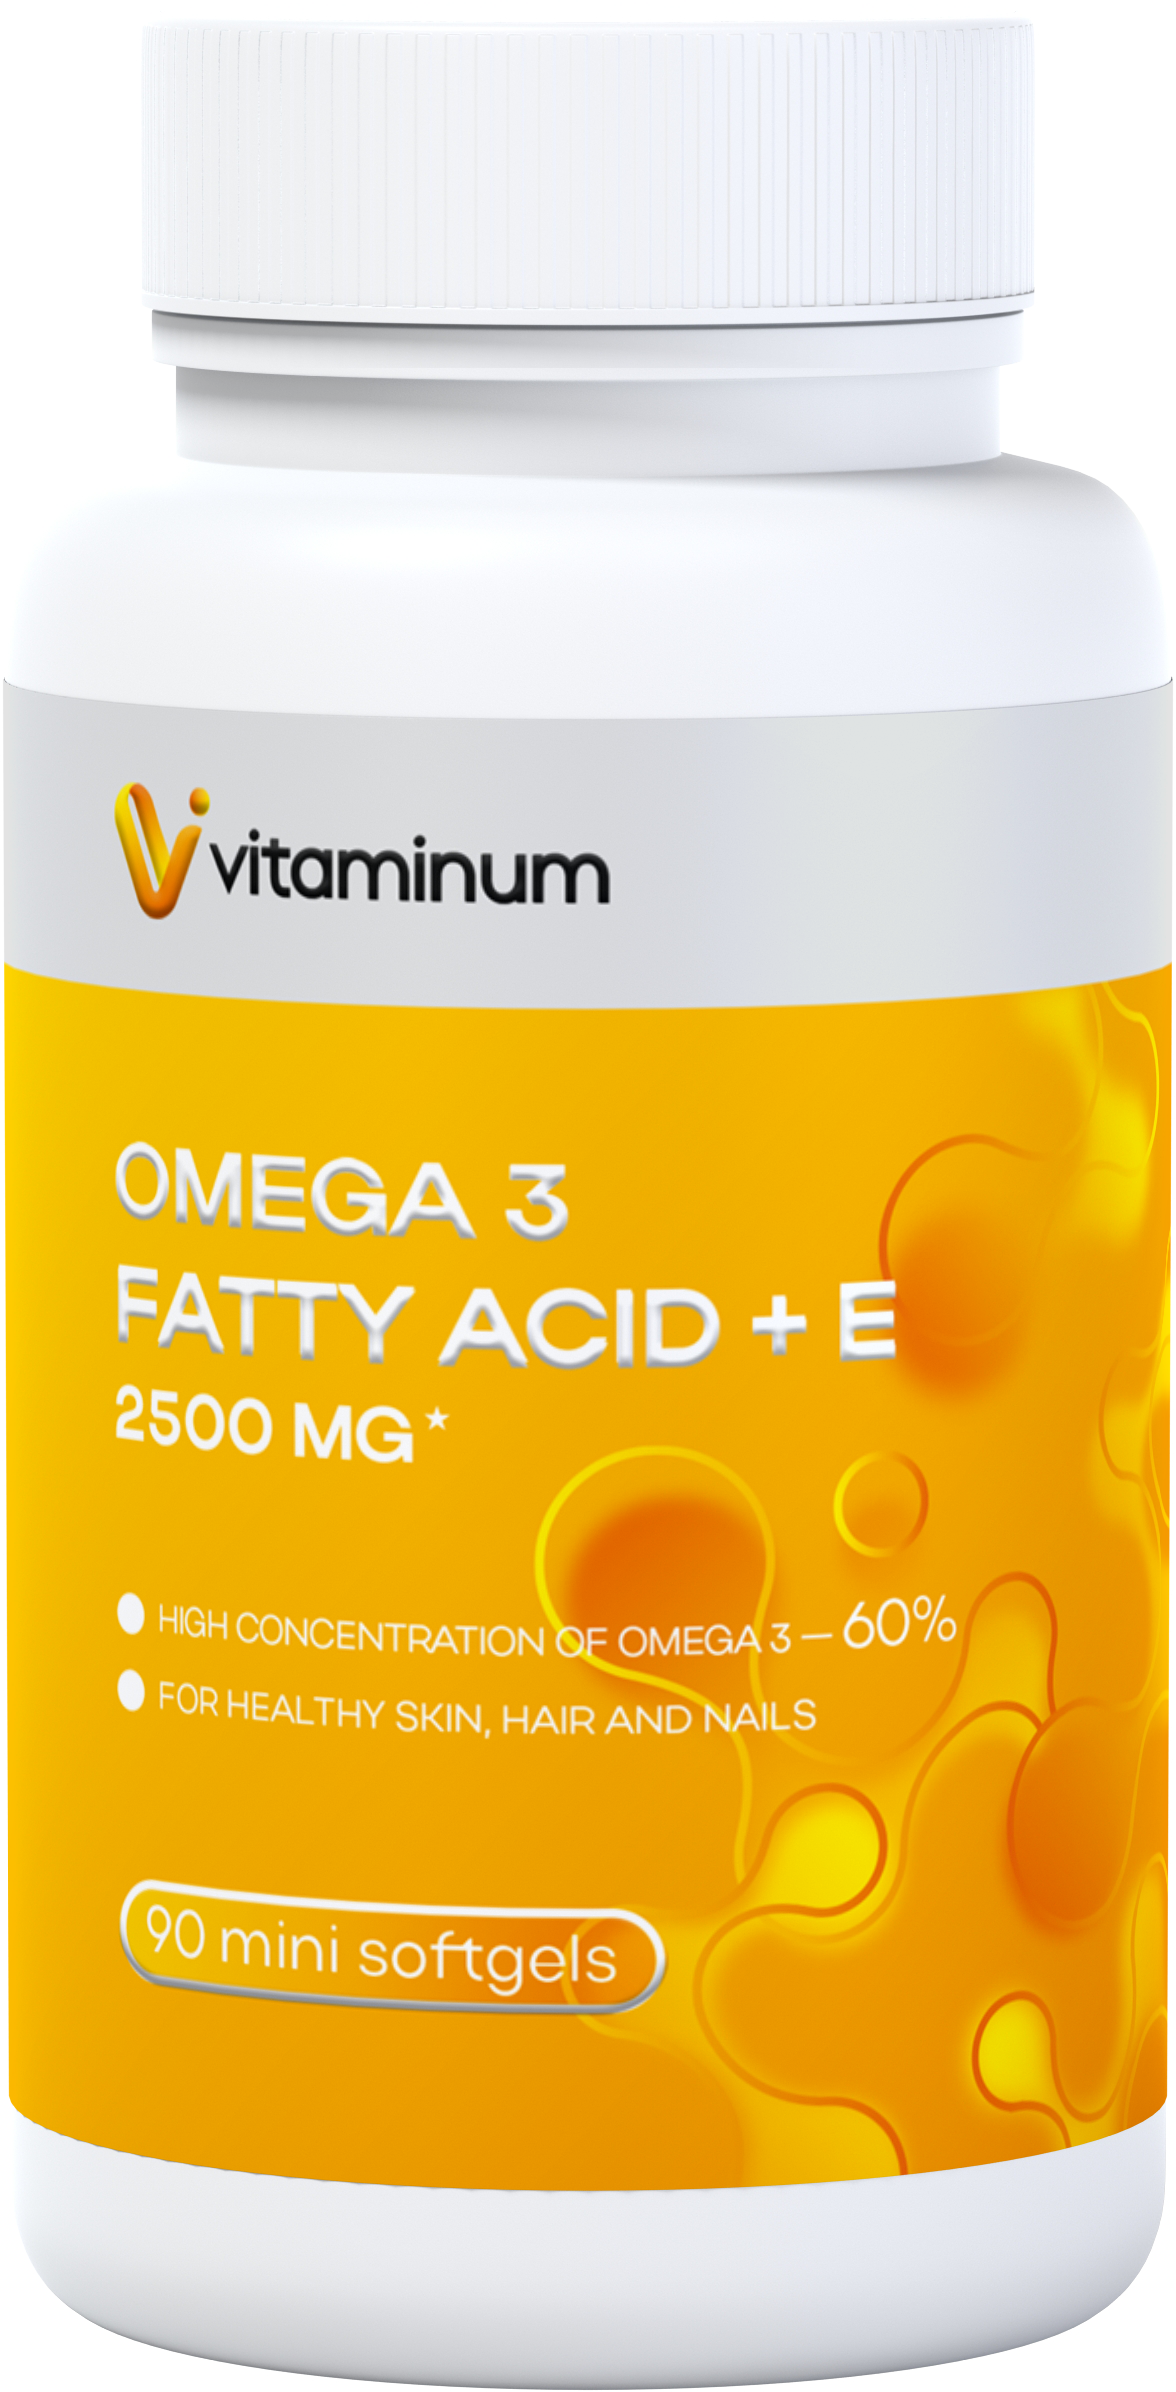  Vitaminum ОМЕГА 3 60% + витамин Е (2500 MG*) 90 капсул 700 мг   в Котласе